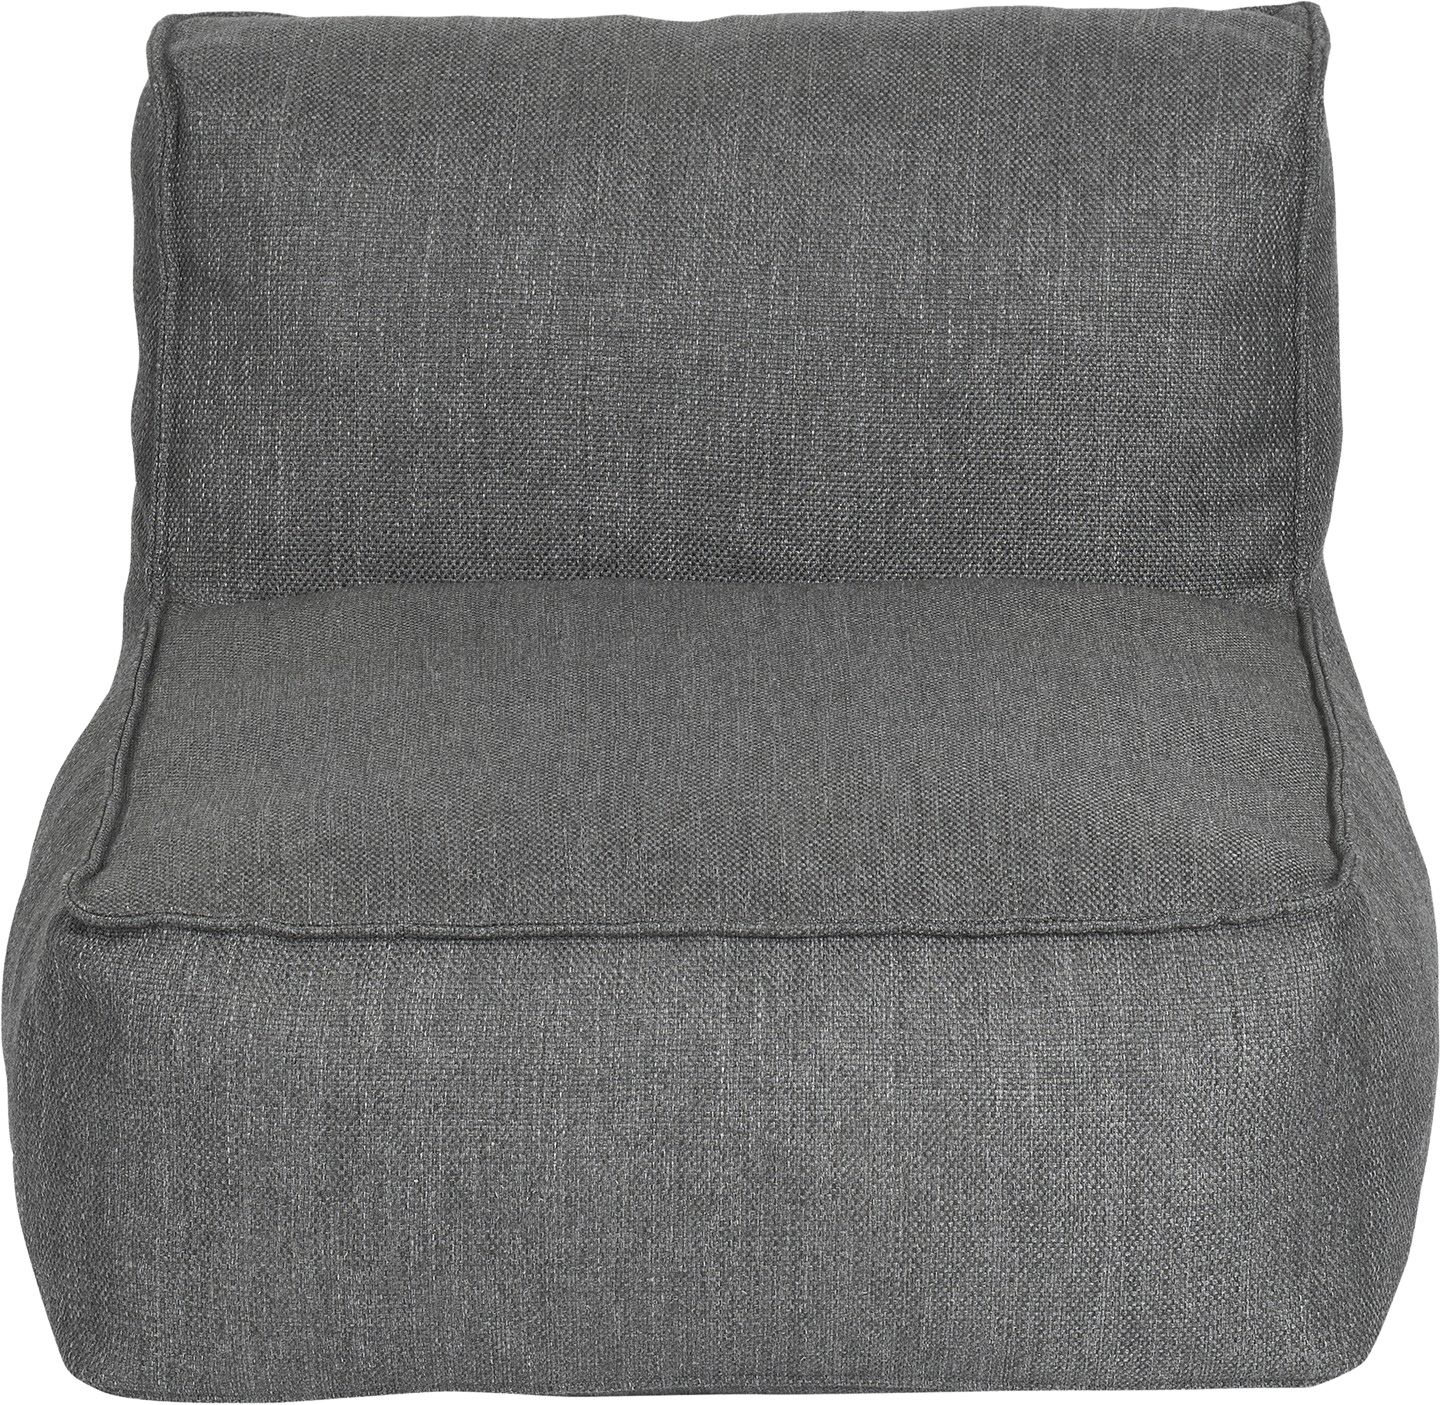 Sitz Modul GROW in coal präsentiert im Onlineshop von KAQTU Design AG. Lounge Sofa ist von e + h Services AG